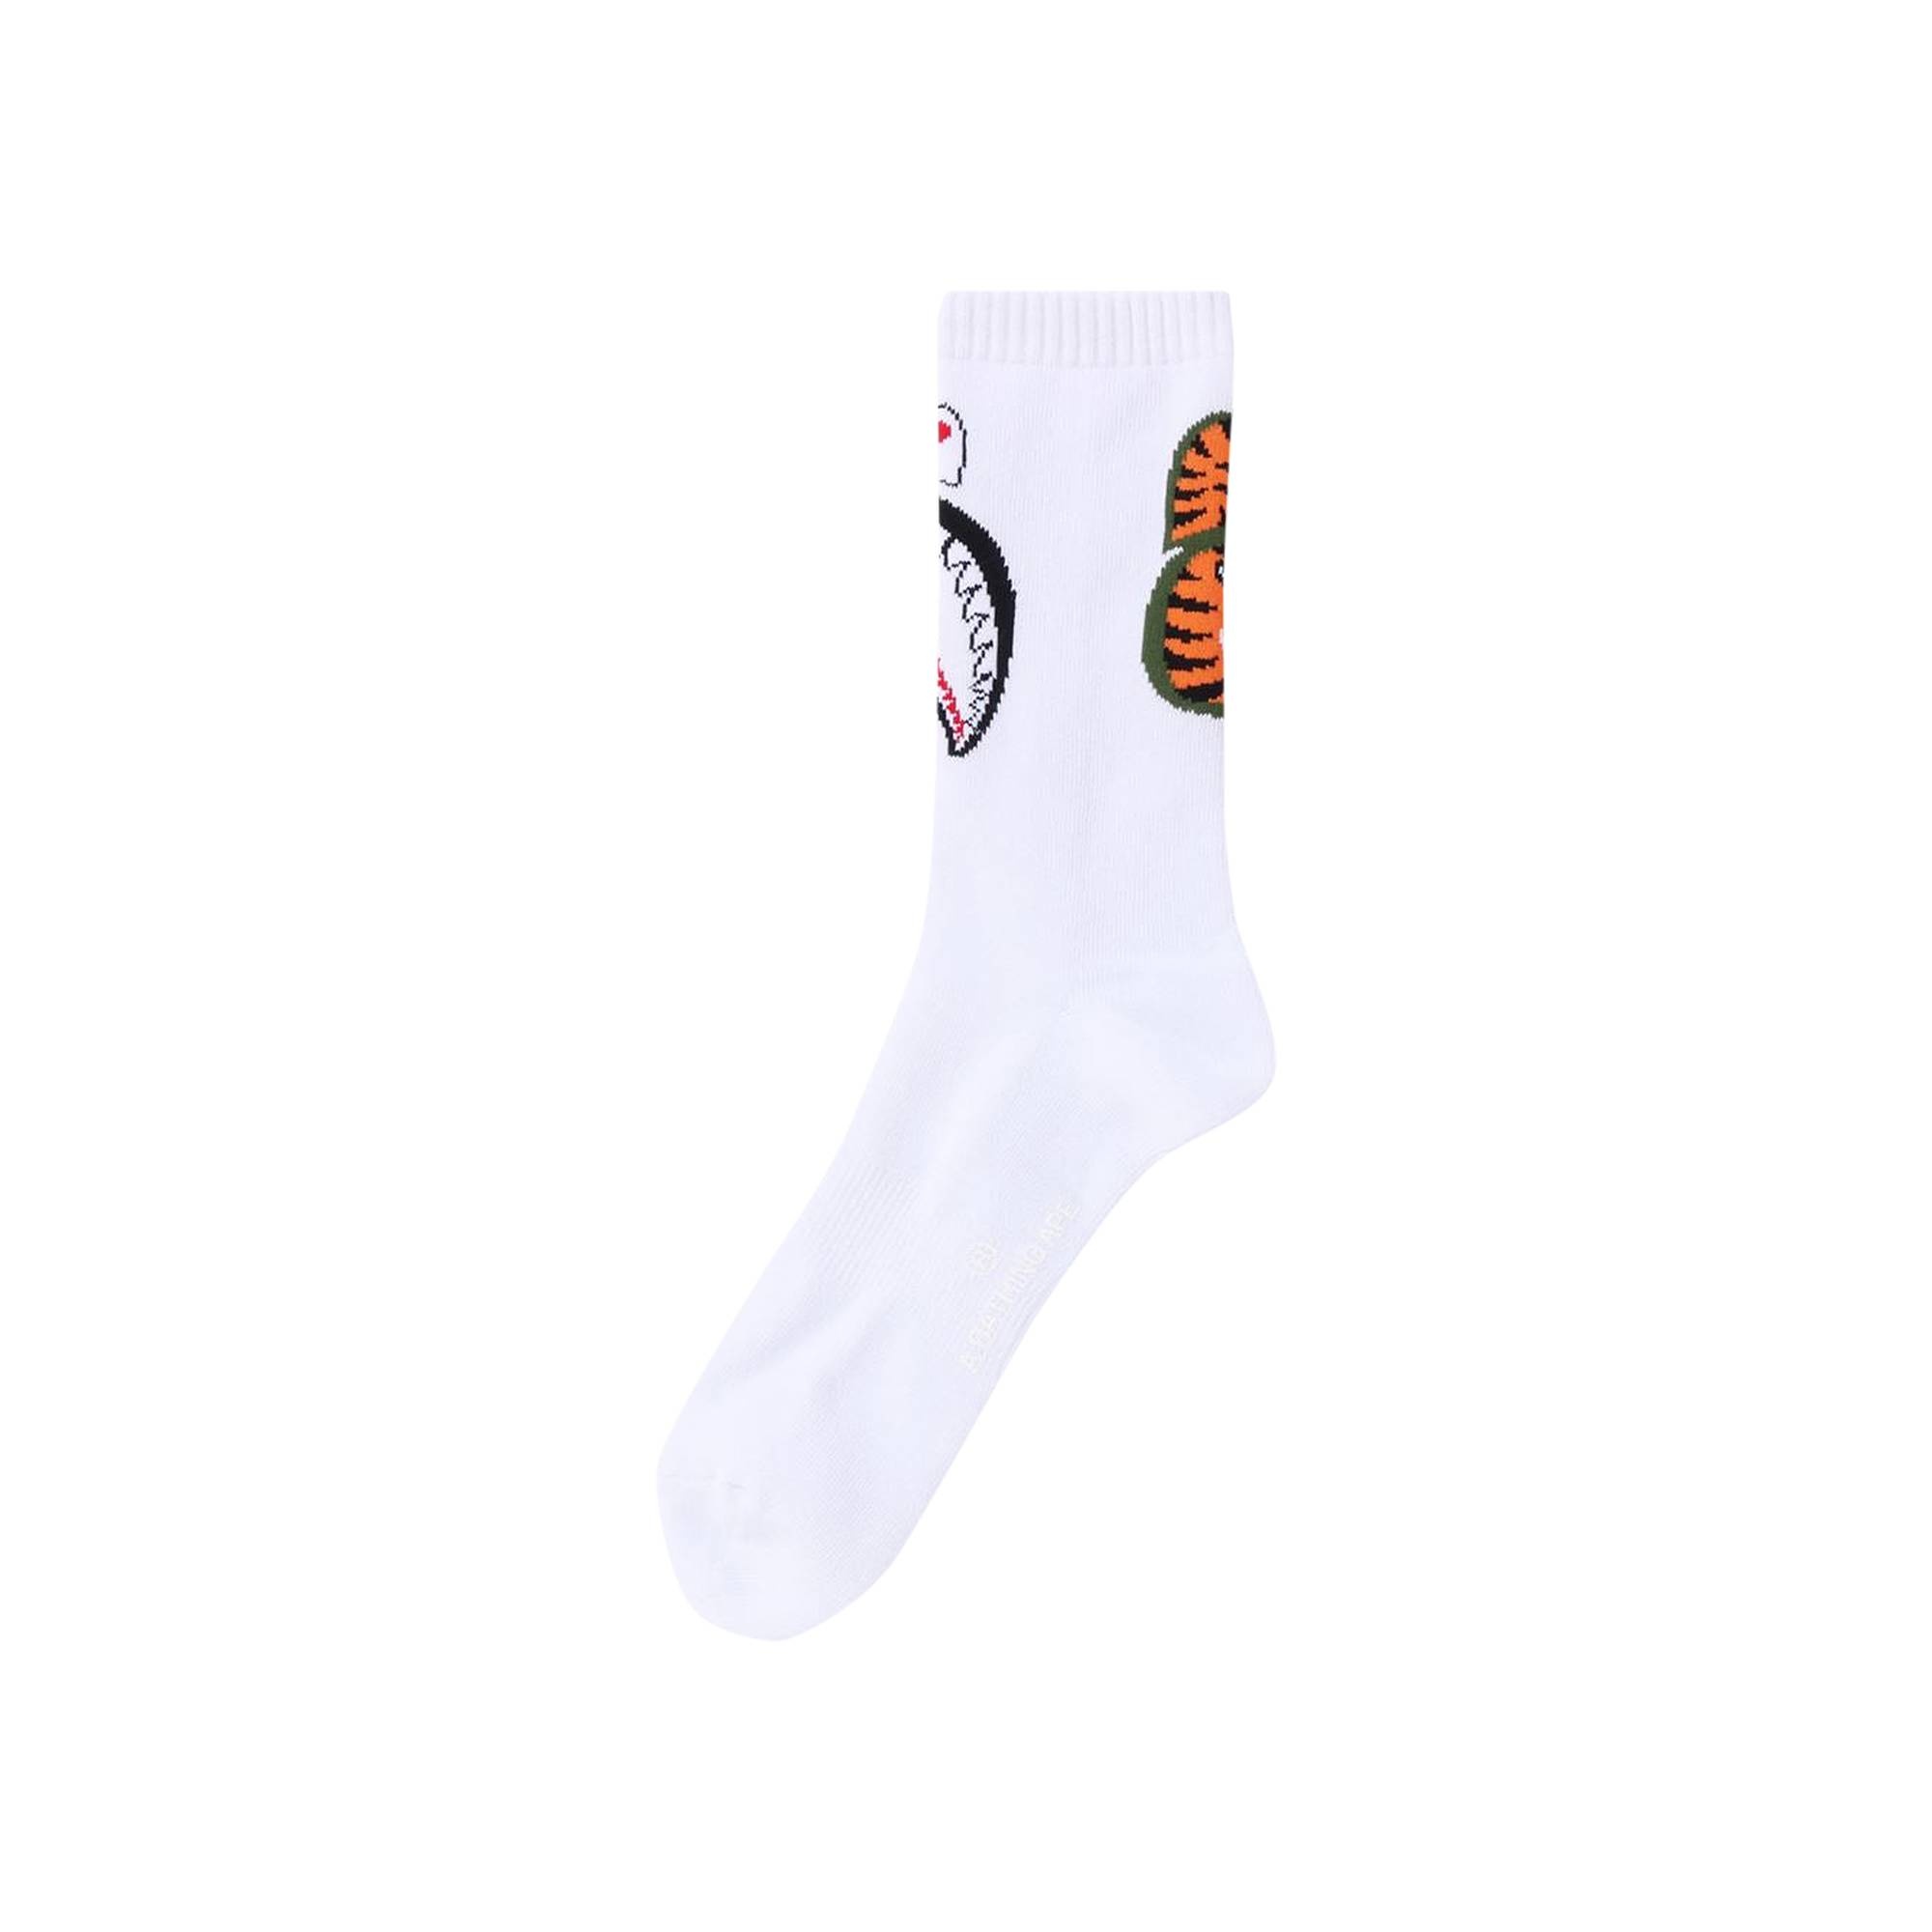 BAPE Shark Socks 'White' - 1